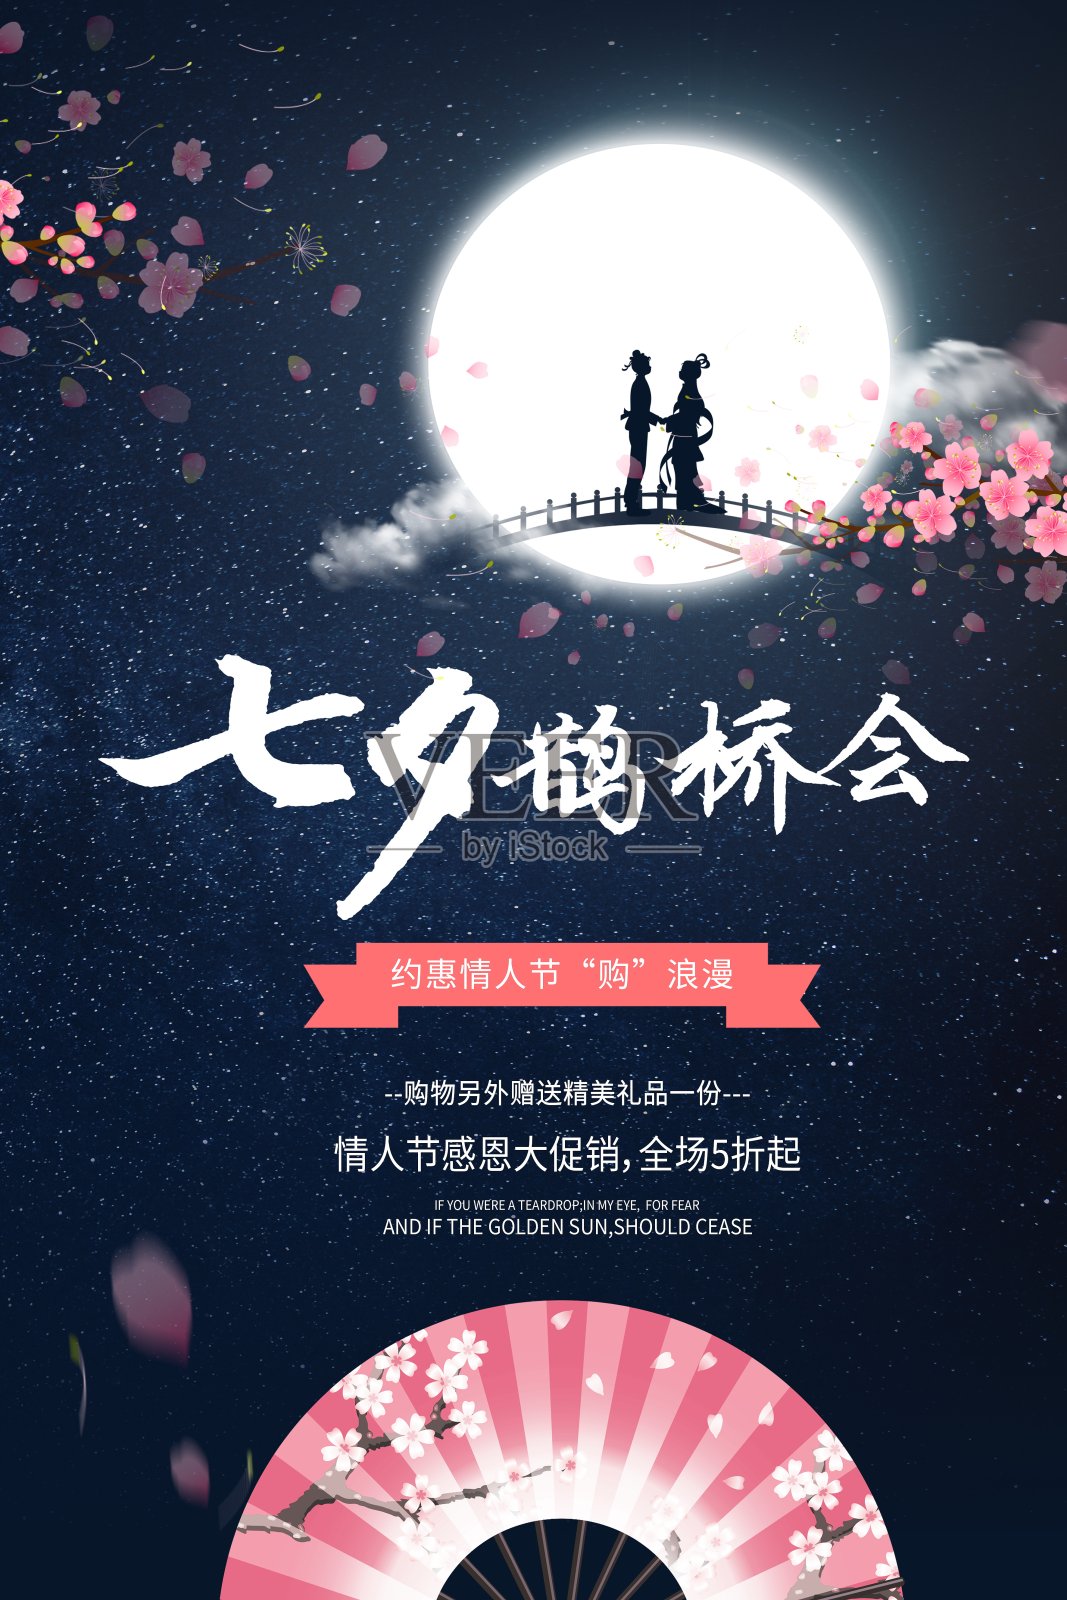 中国风七夕鹊桥会节日促销海报设计模板素材